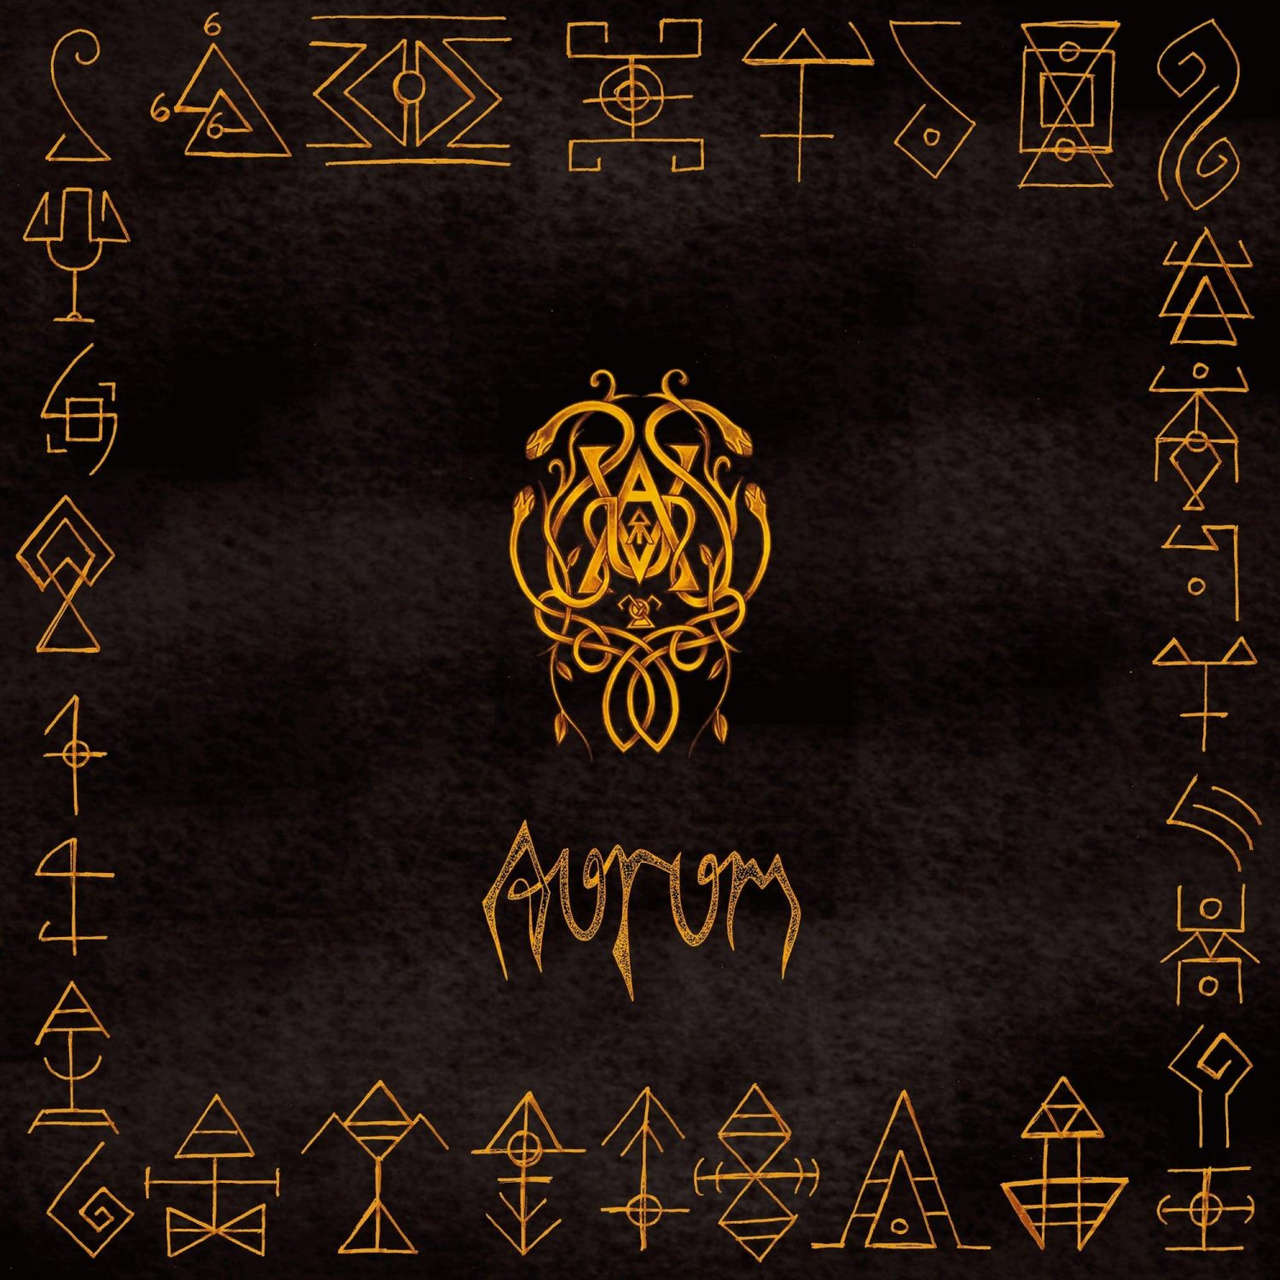 Urarv - Aurum (Digipak CD)